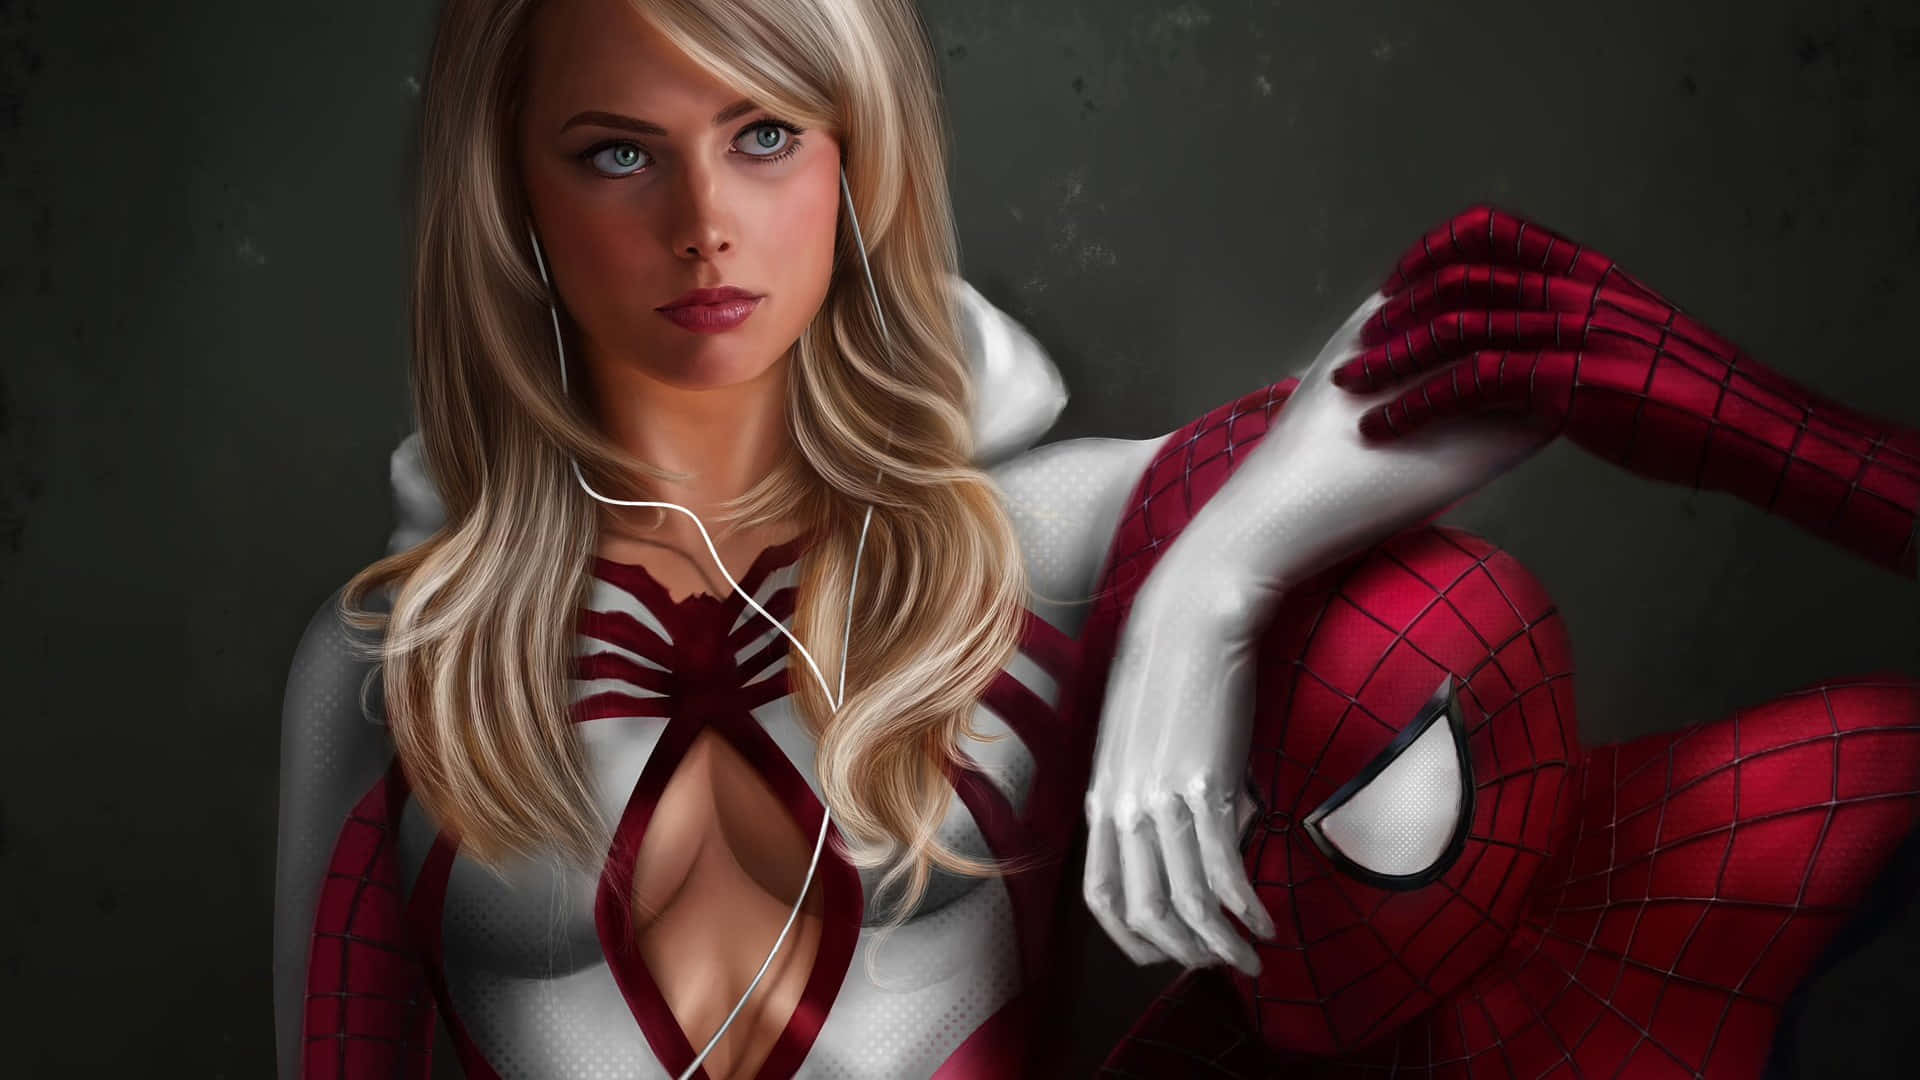 Enkvinna I En Spider-man-kostym Poserar Med Sina Hörlurar.